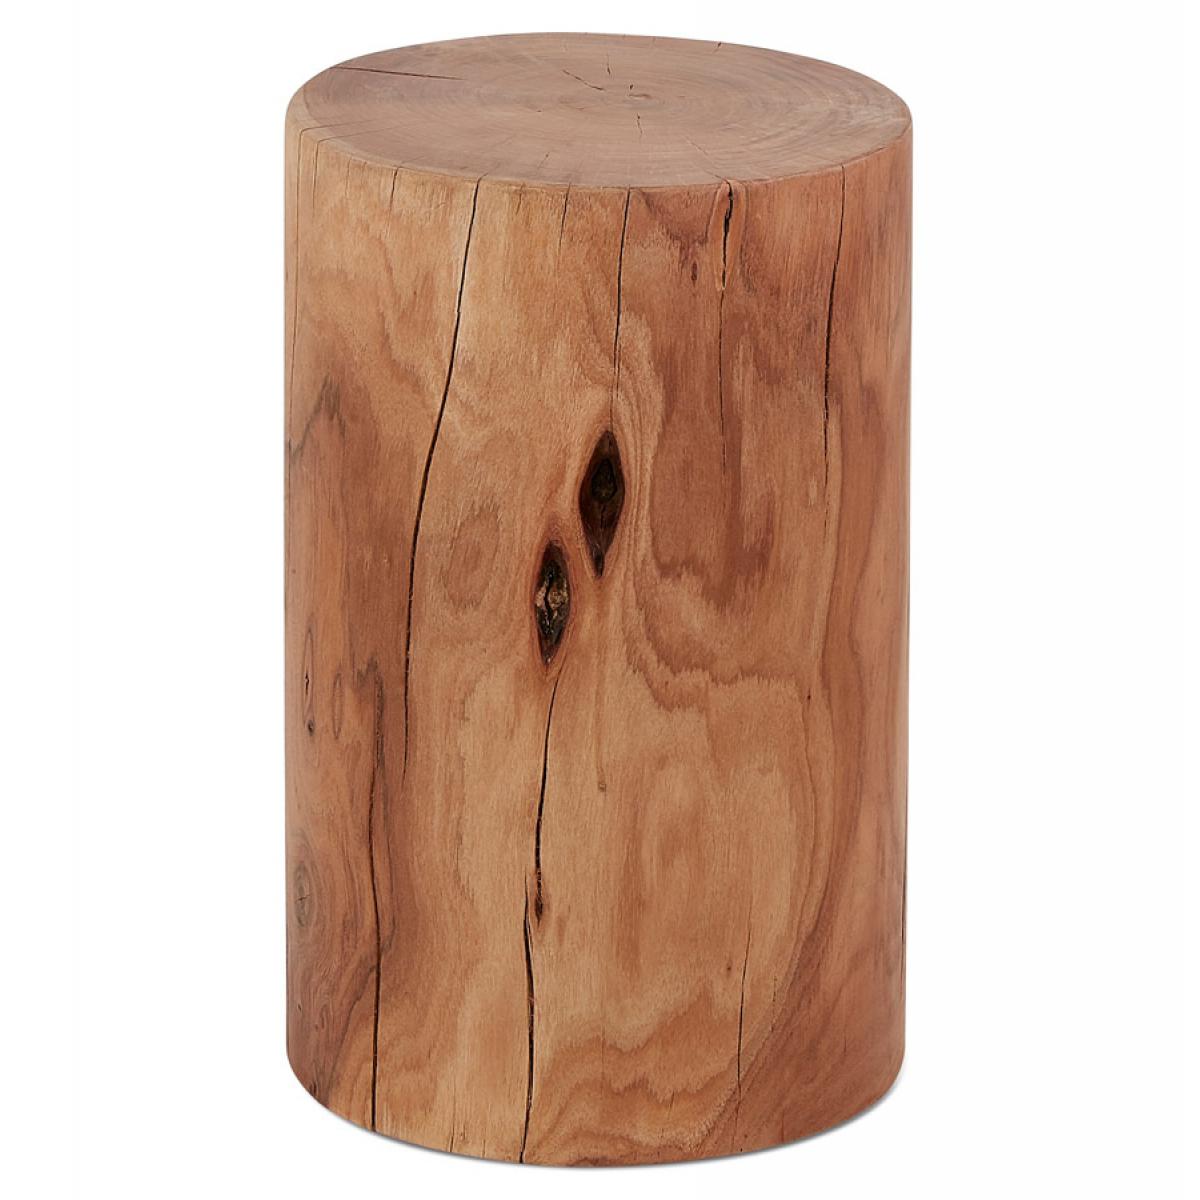 Alterego - Table d'appoint / Tabouret tronc d'arbre 'STOLY' en bois massif finition naturelle - Chaises